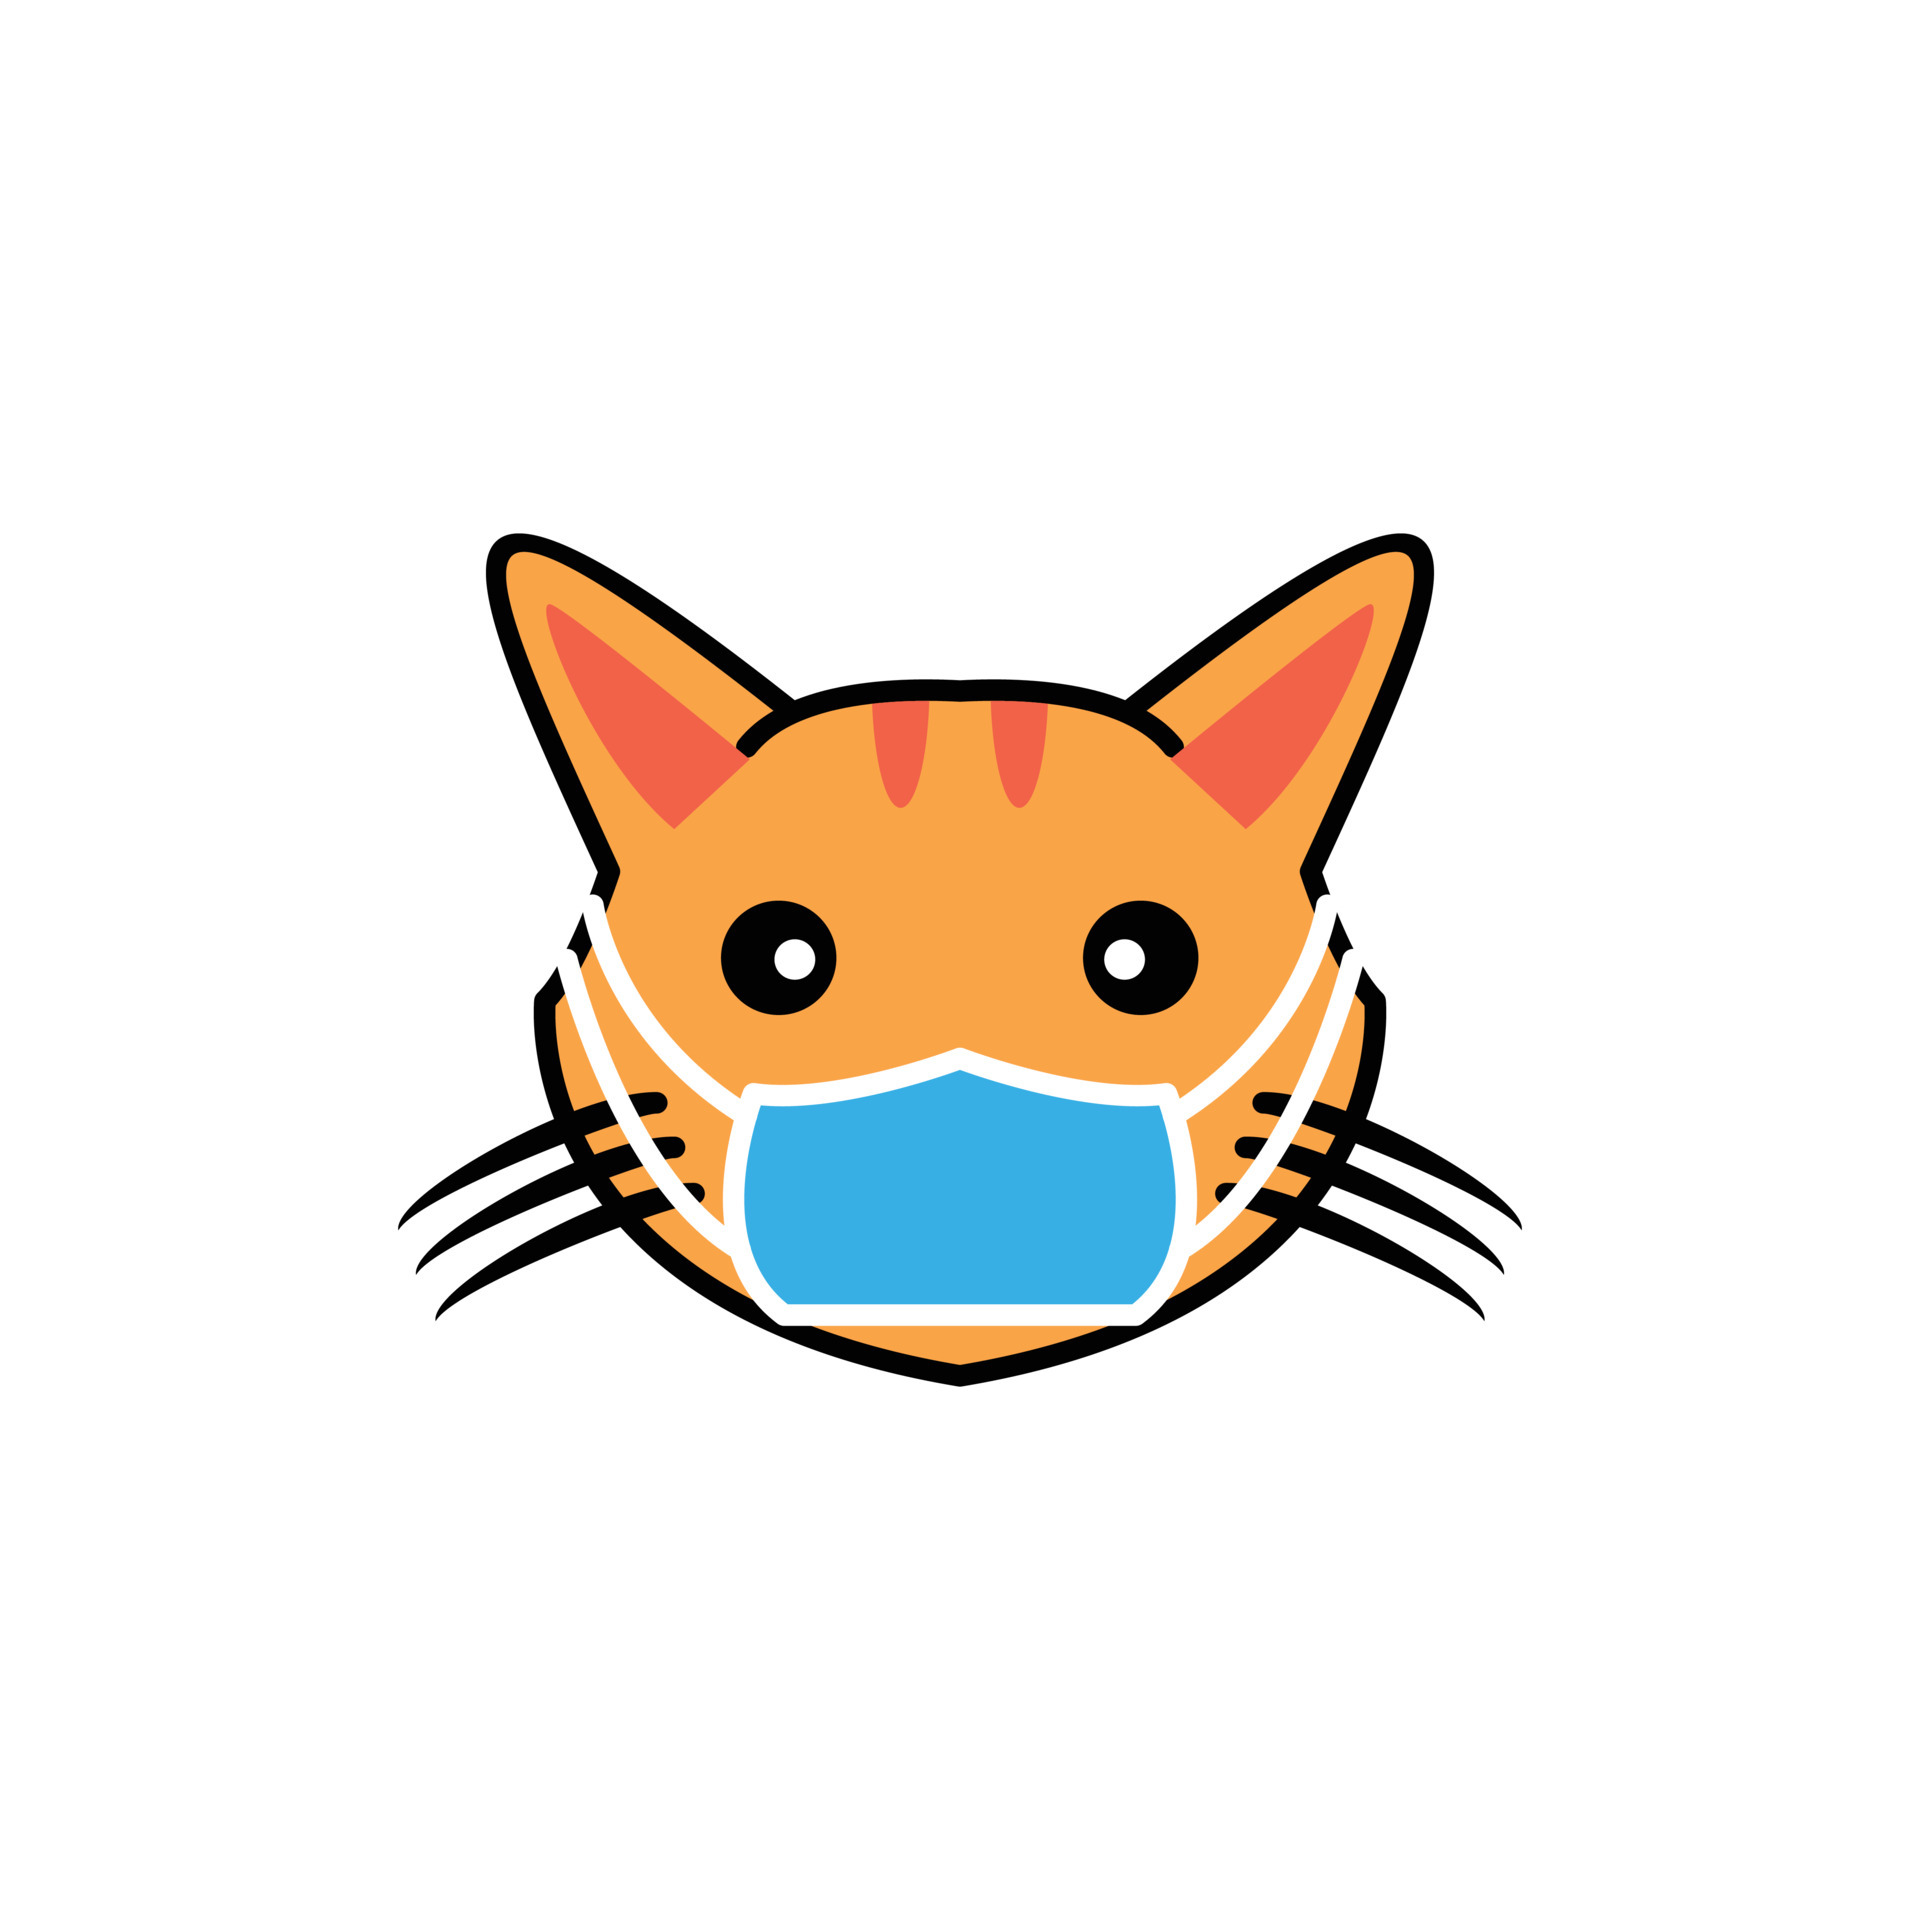 Gato tailandês dos desenhos animados com design simples. gato